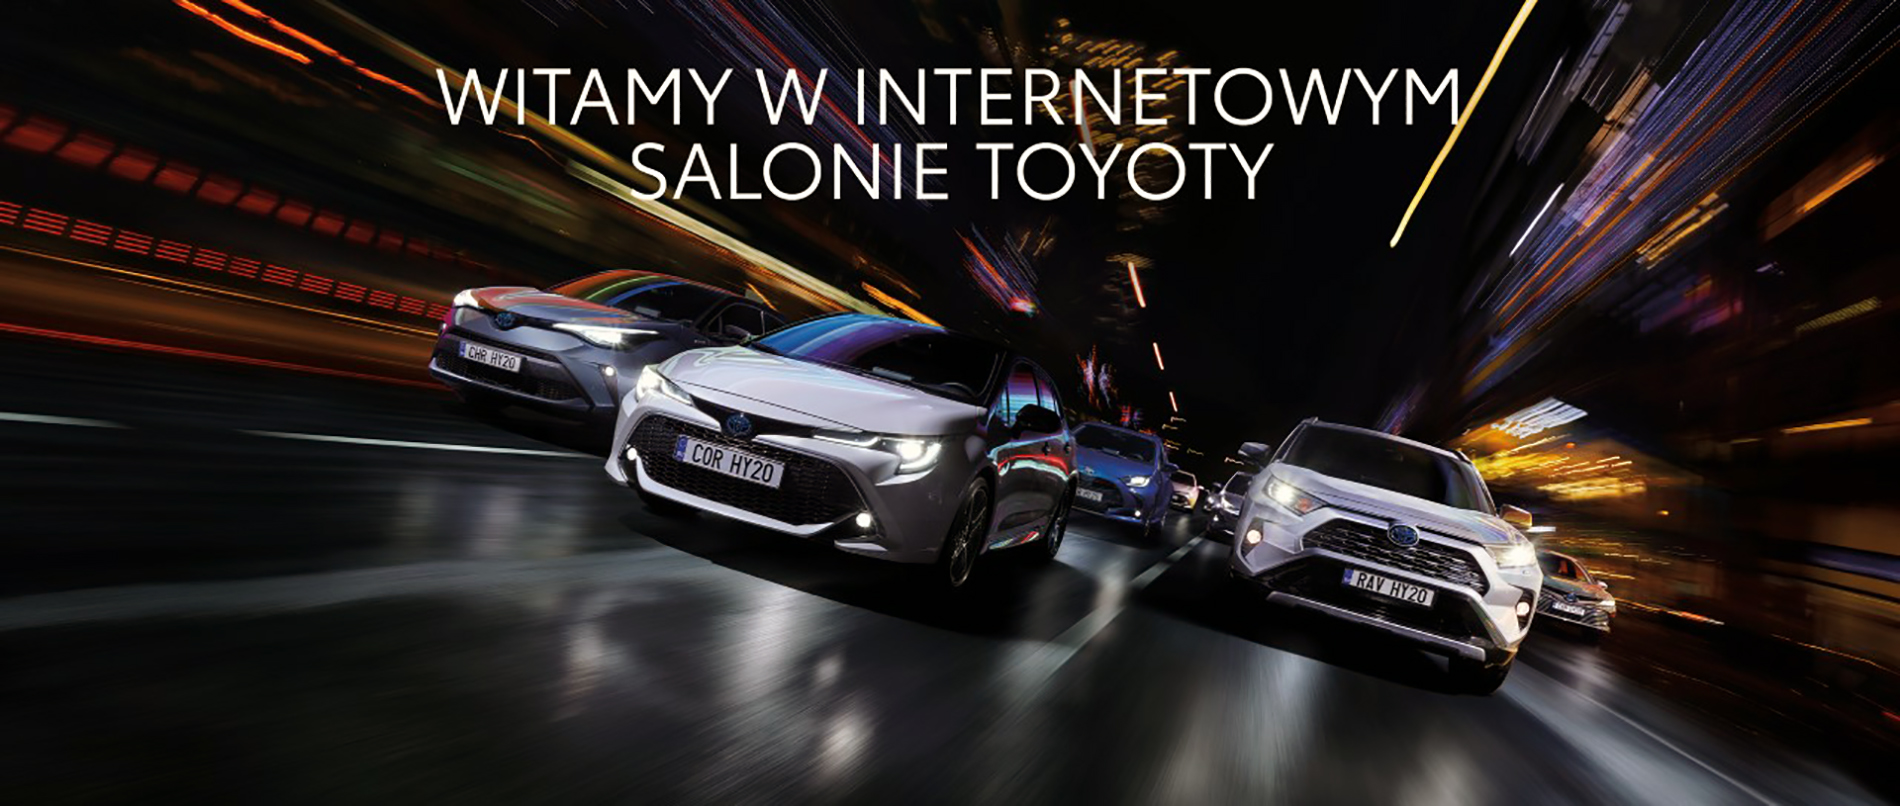 Toyota Motor Poland uruchamia dodatkową usługę - internetowe salony sprzedaży dla Toyoty oraz Lexusa